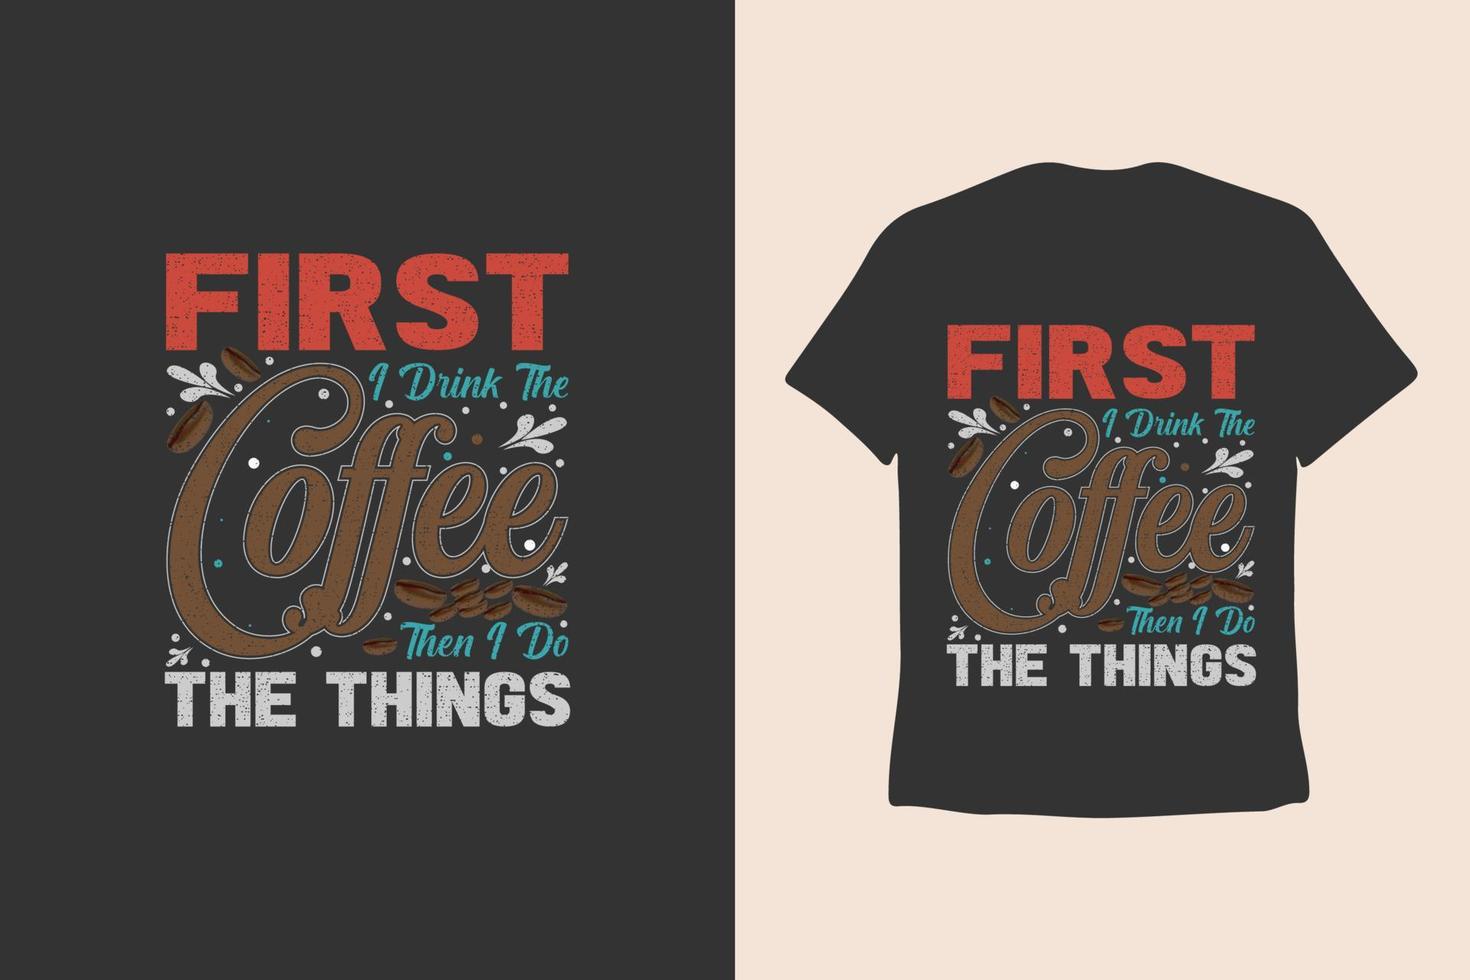 kaffe t-shirt design, årgång typografi, och text retro slogan vektor